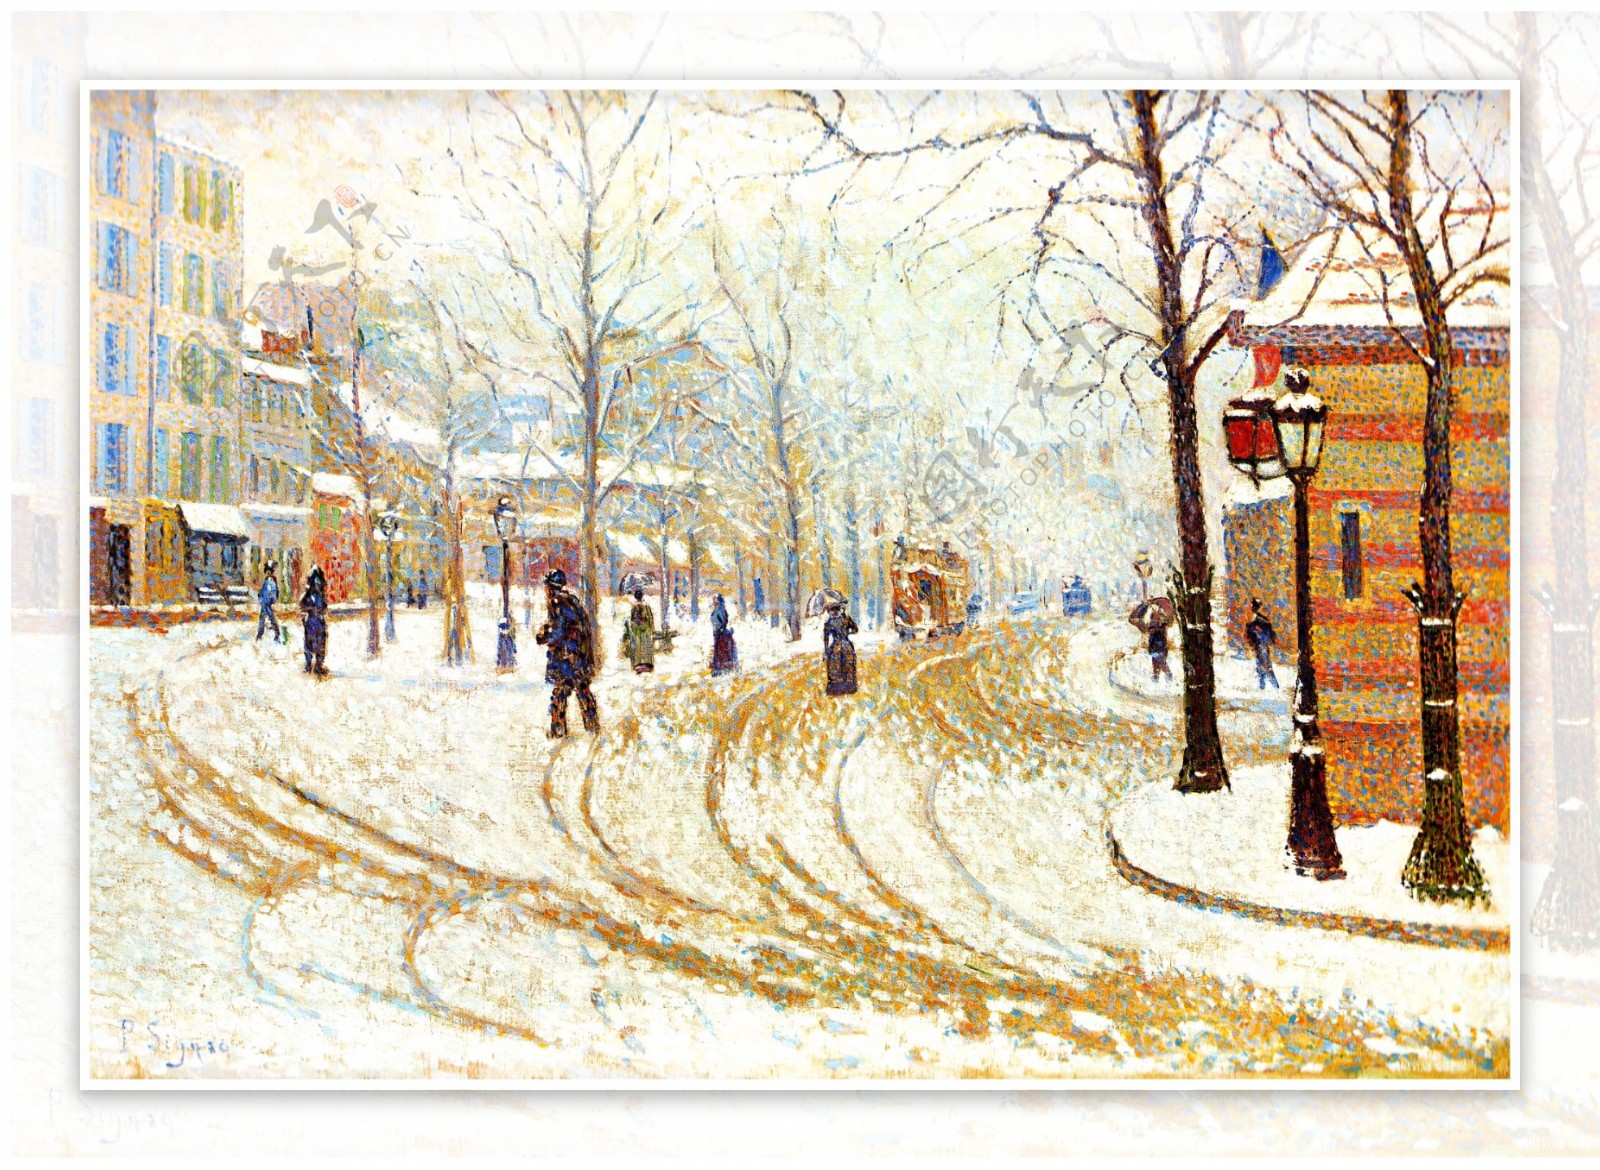 冬日街头风景油画图片